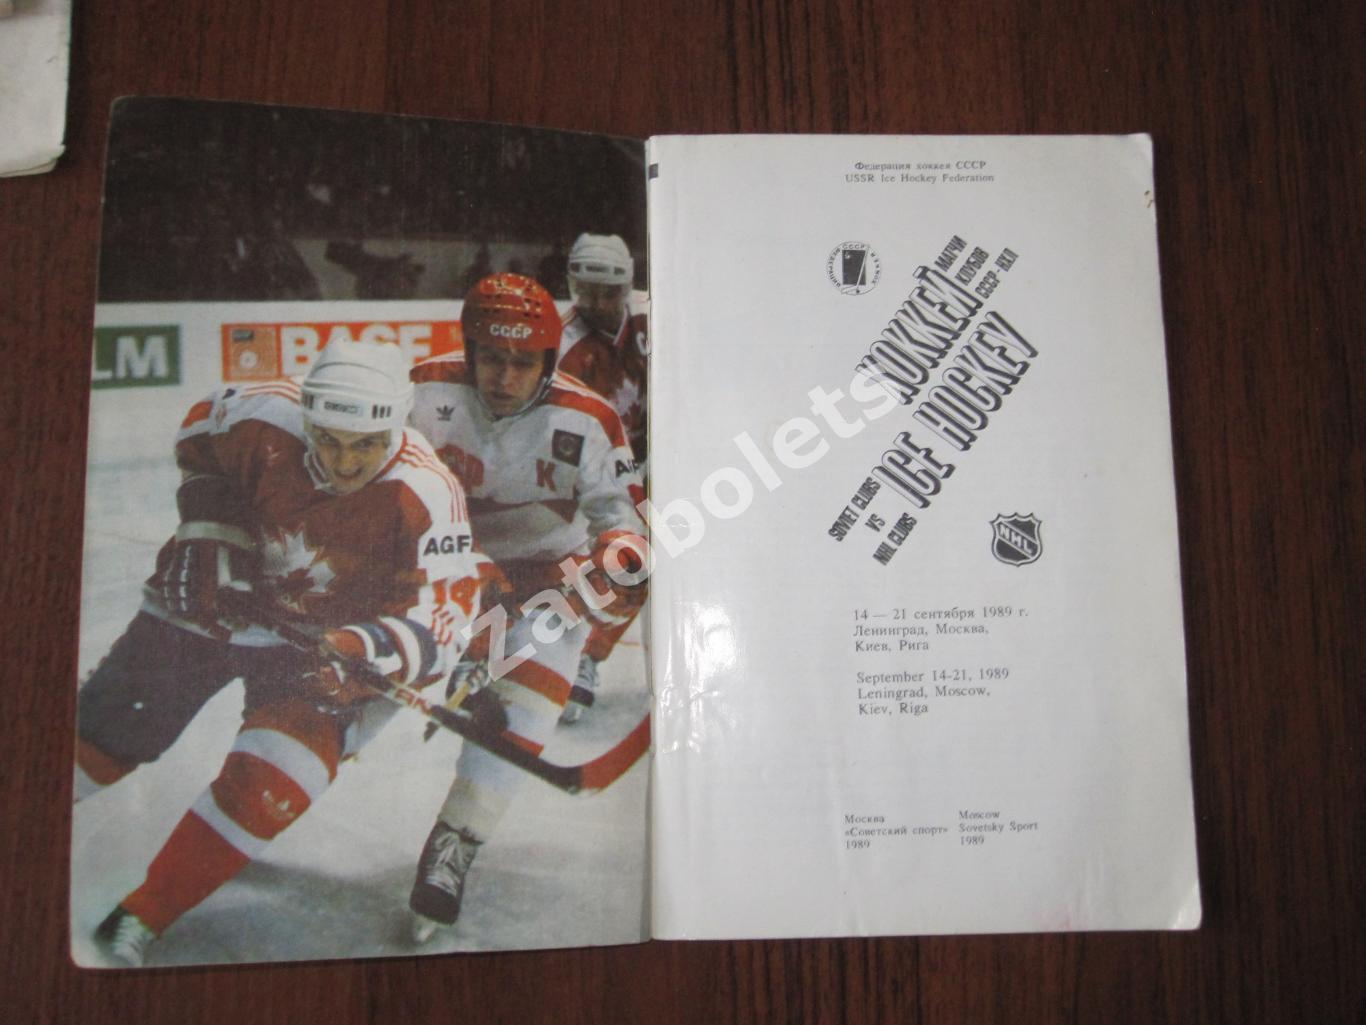 Матчи клубов СССР и НХЛ 14-21 сентября 1989 Ленинград Москва Киев Рига 1